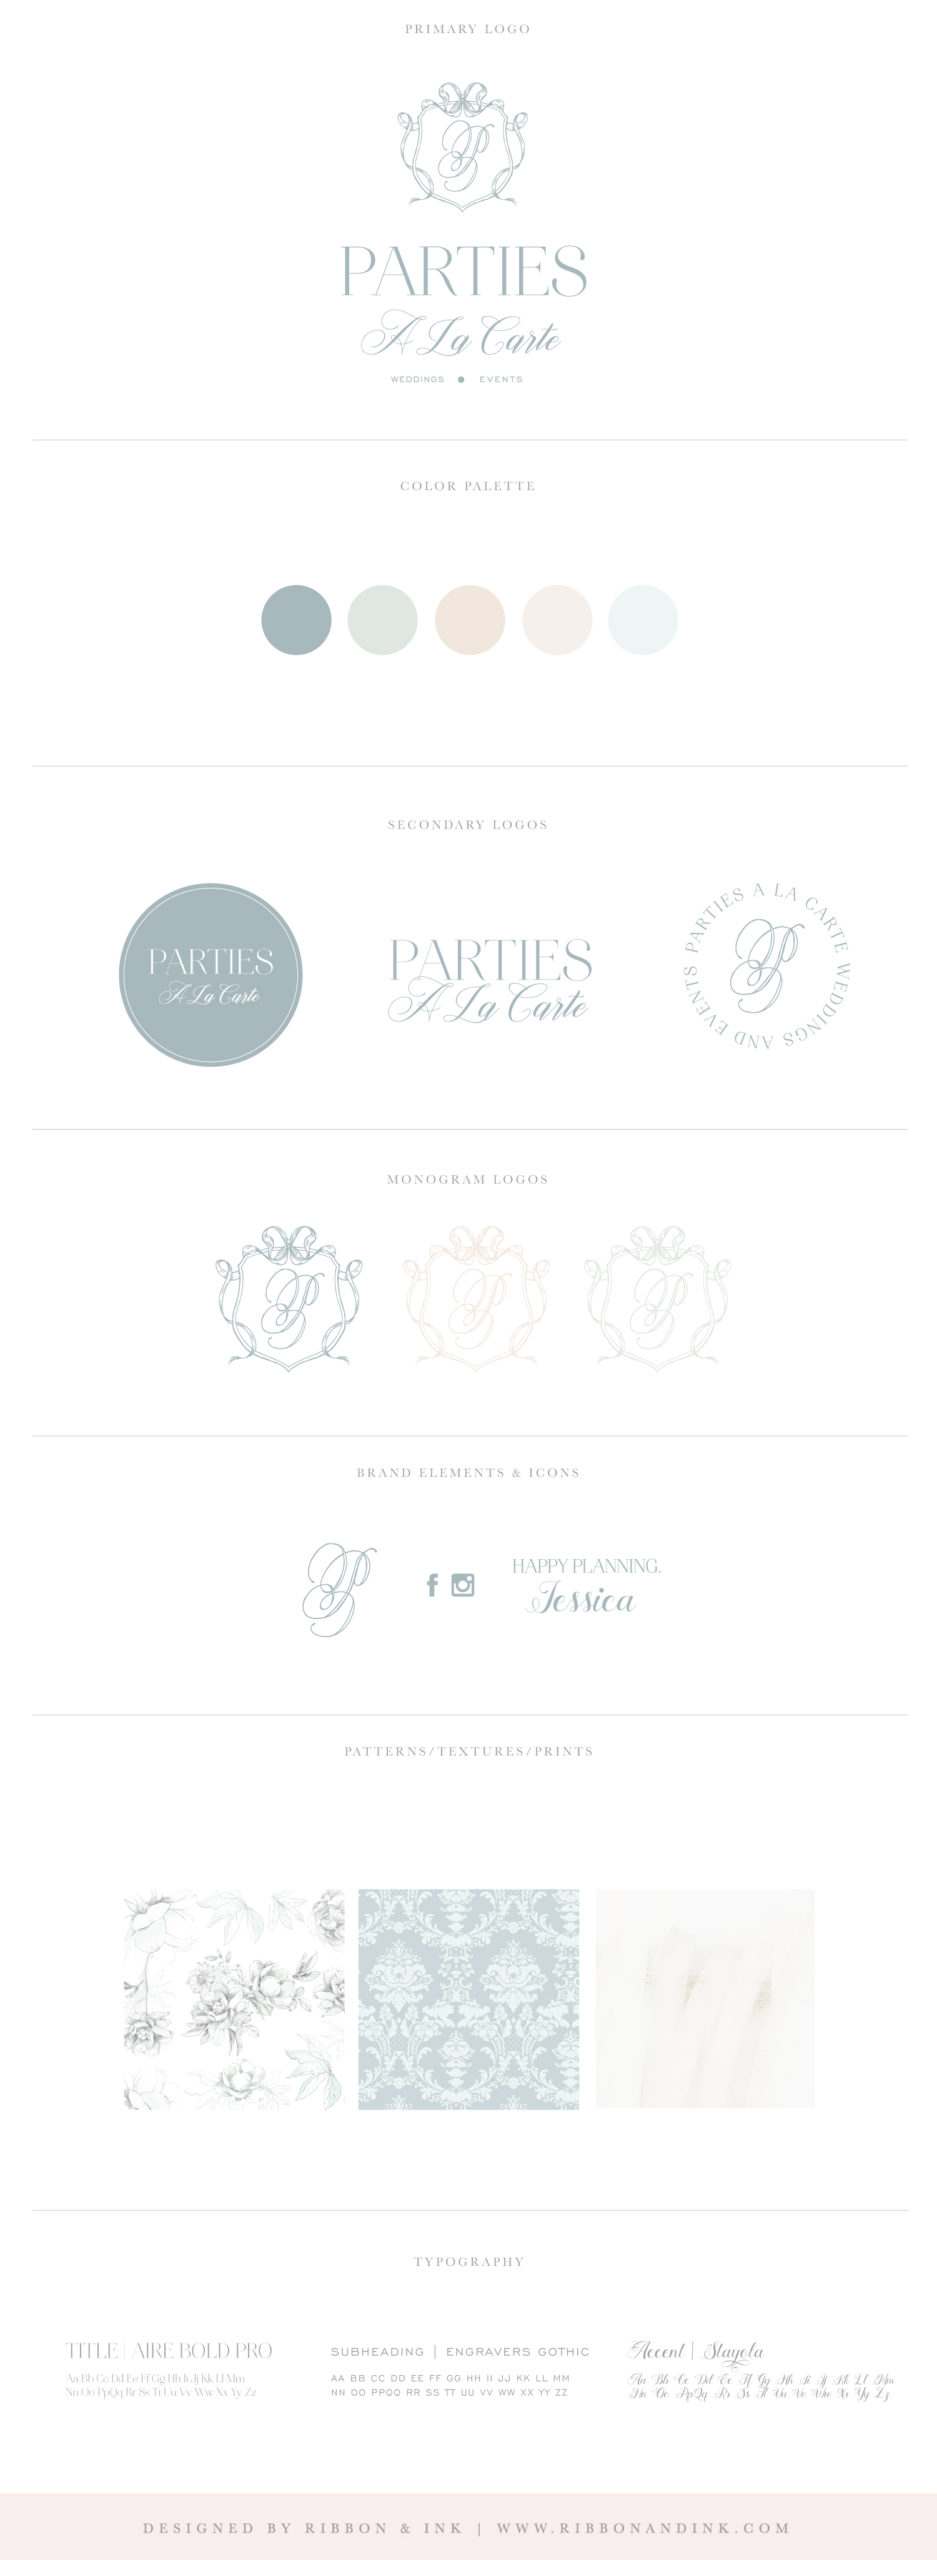 branding board / brand identity designer / logo designer for women / branding for creatives and wedding businesses / fine art